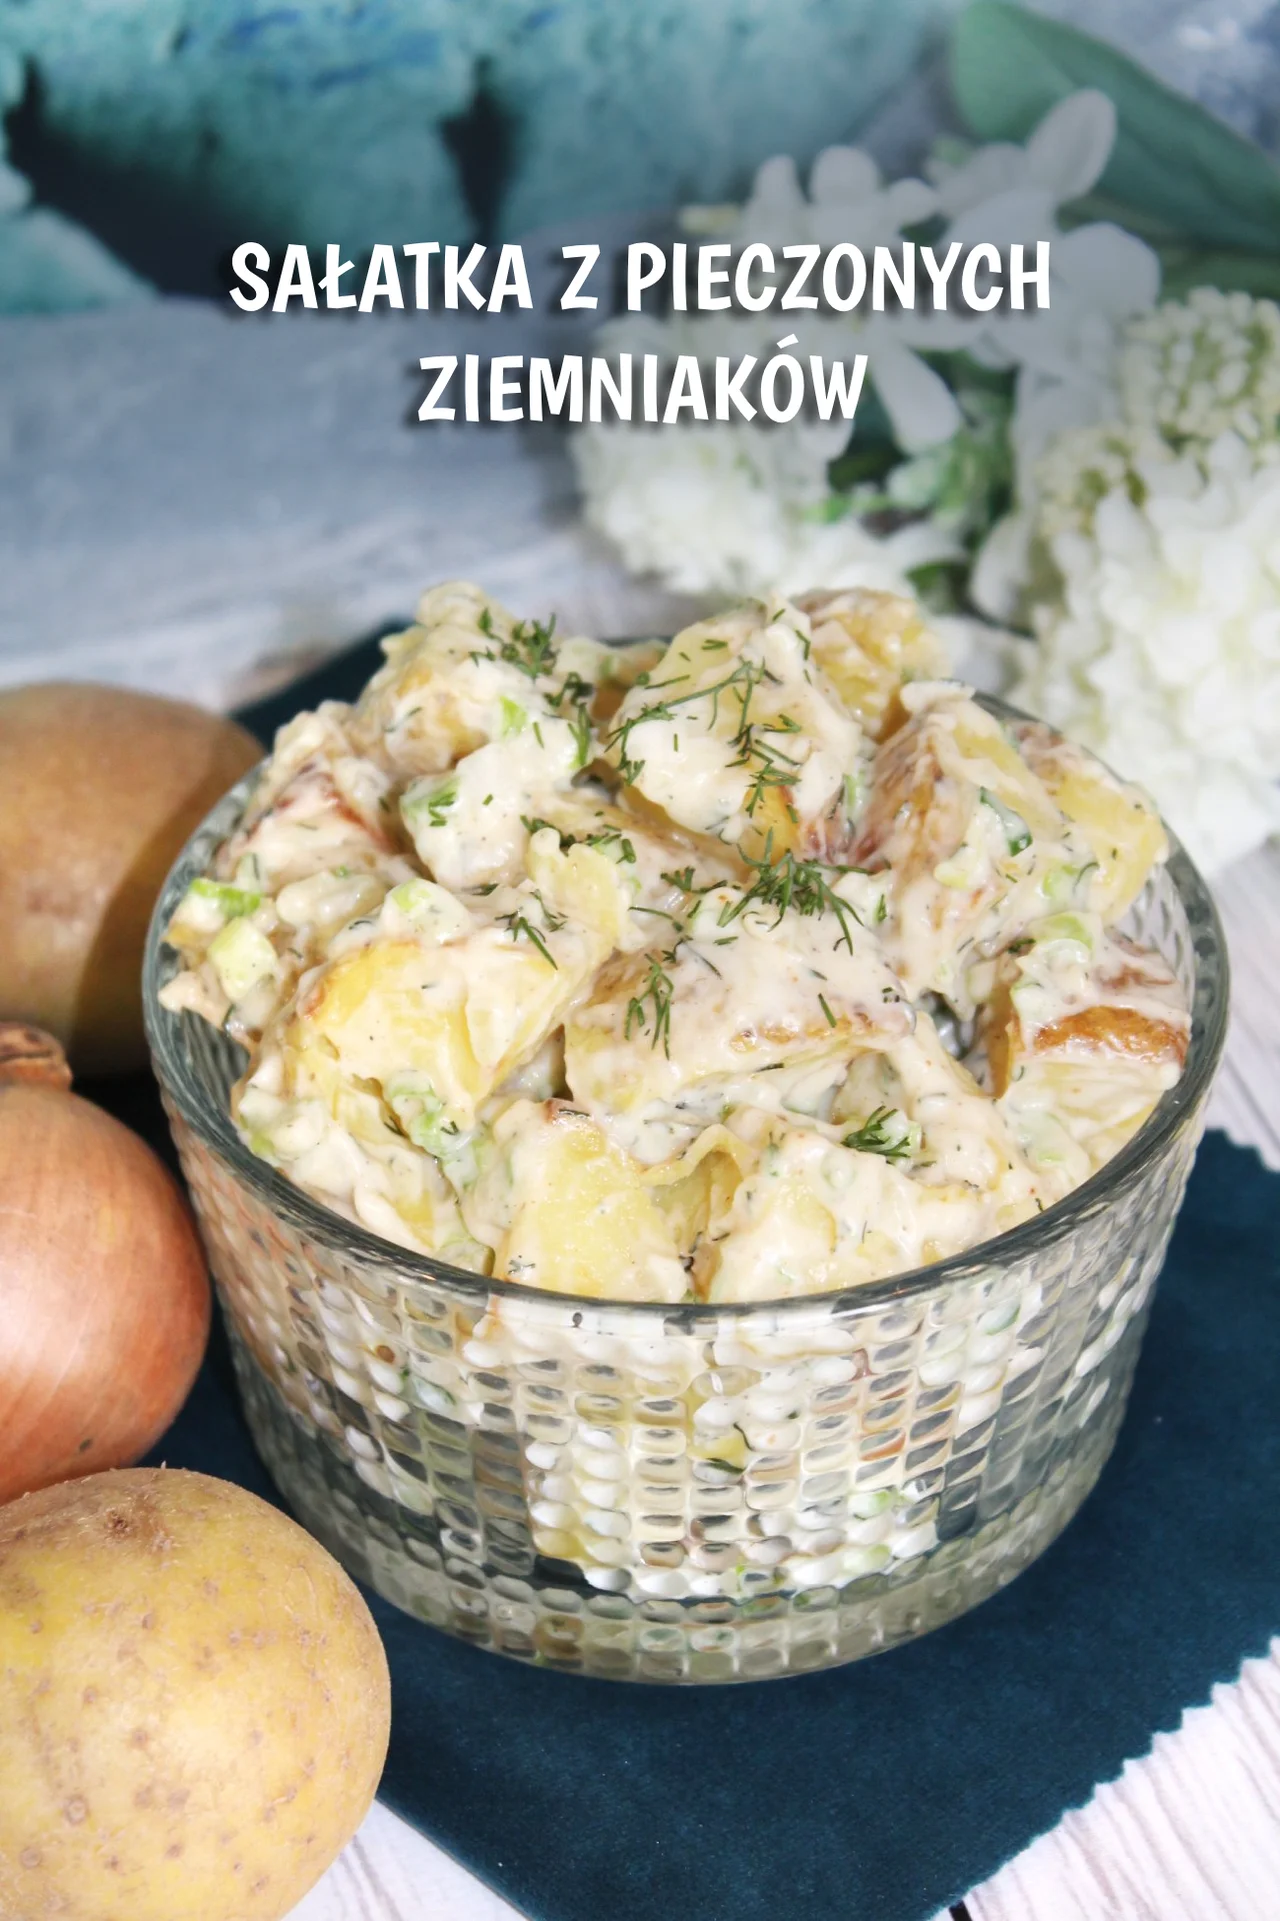 Sałatka z pieczonych ziemniaków - PRZEPIS